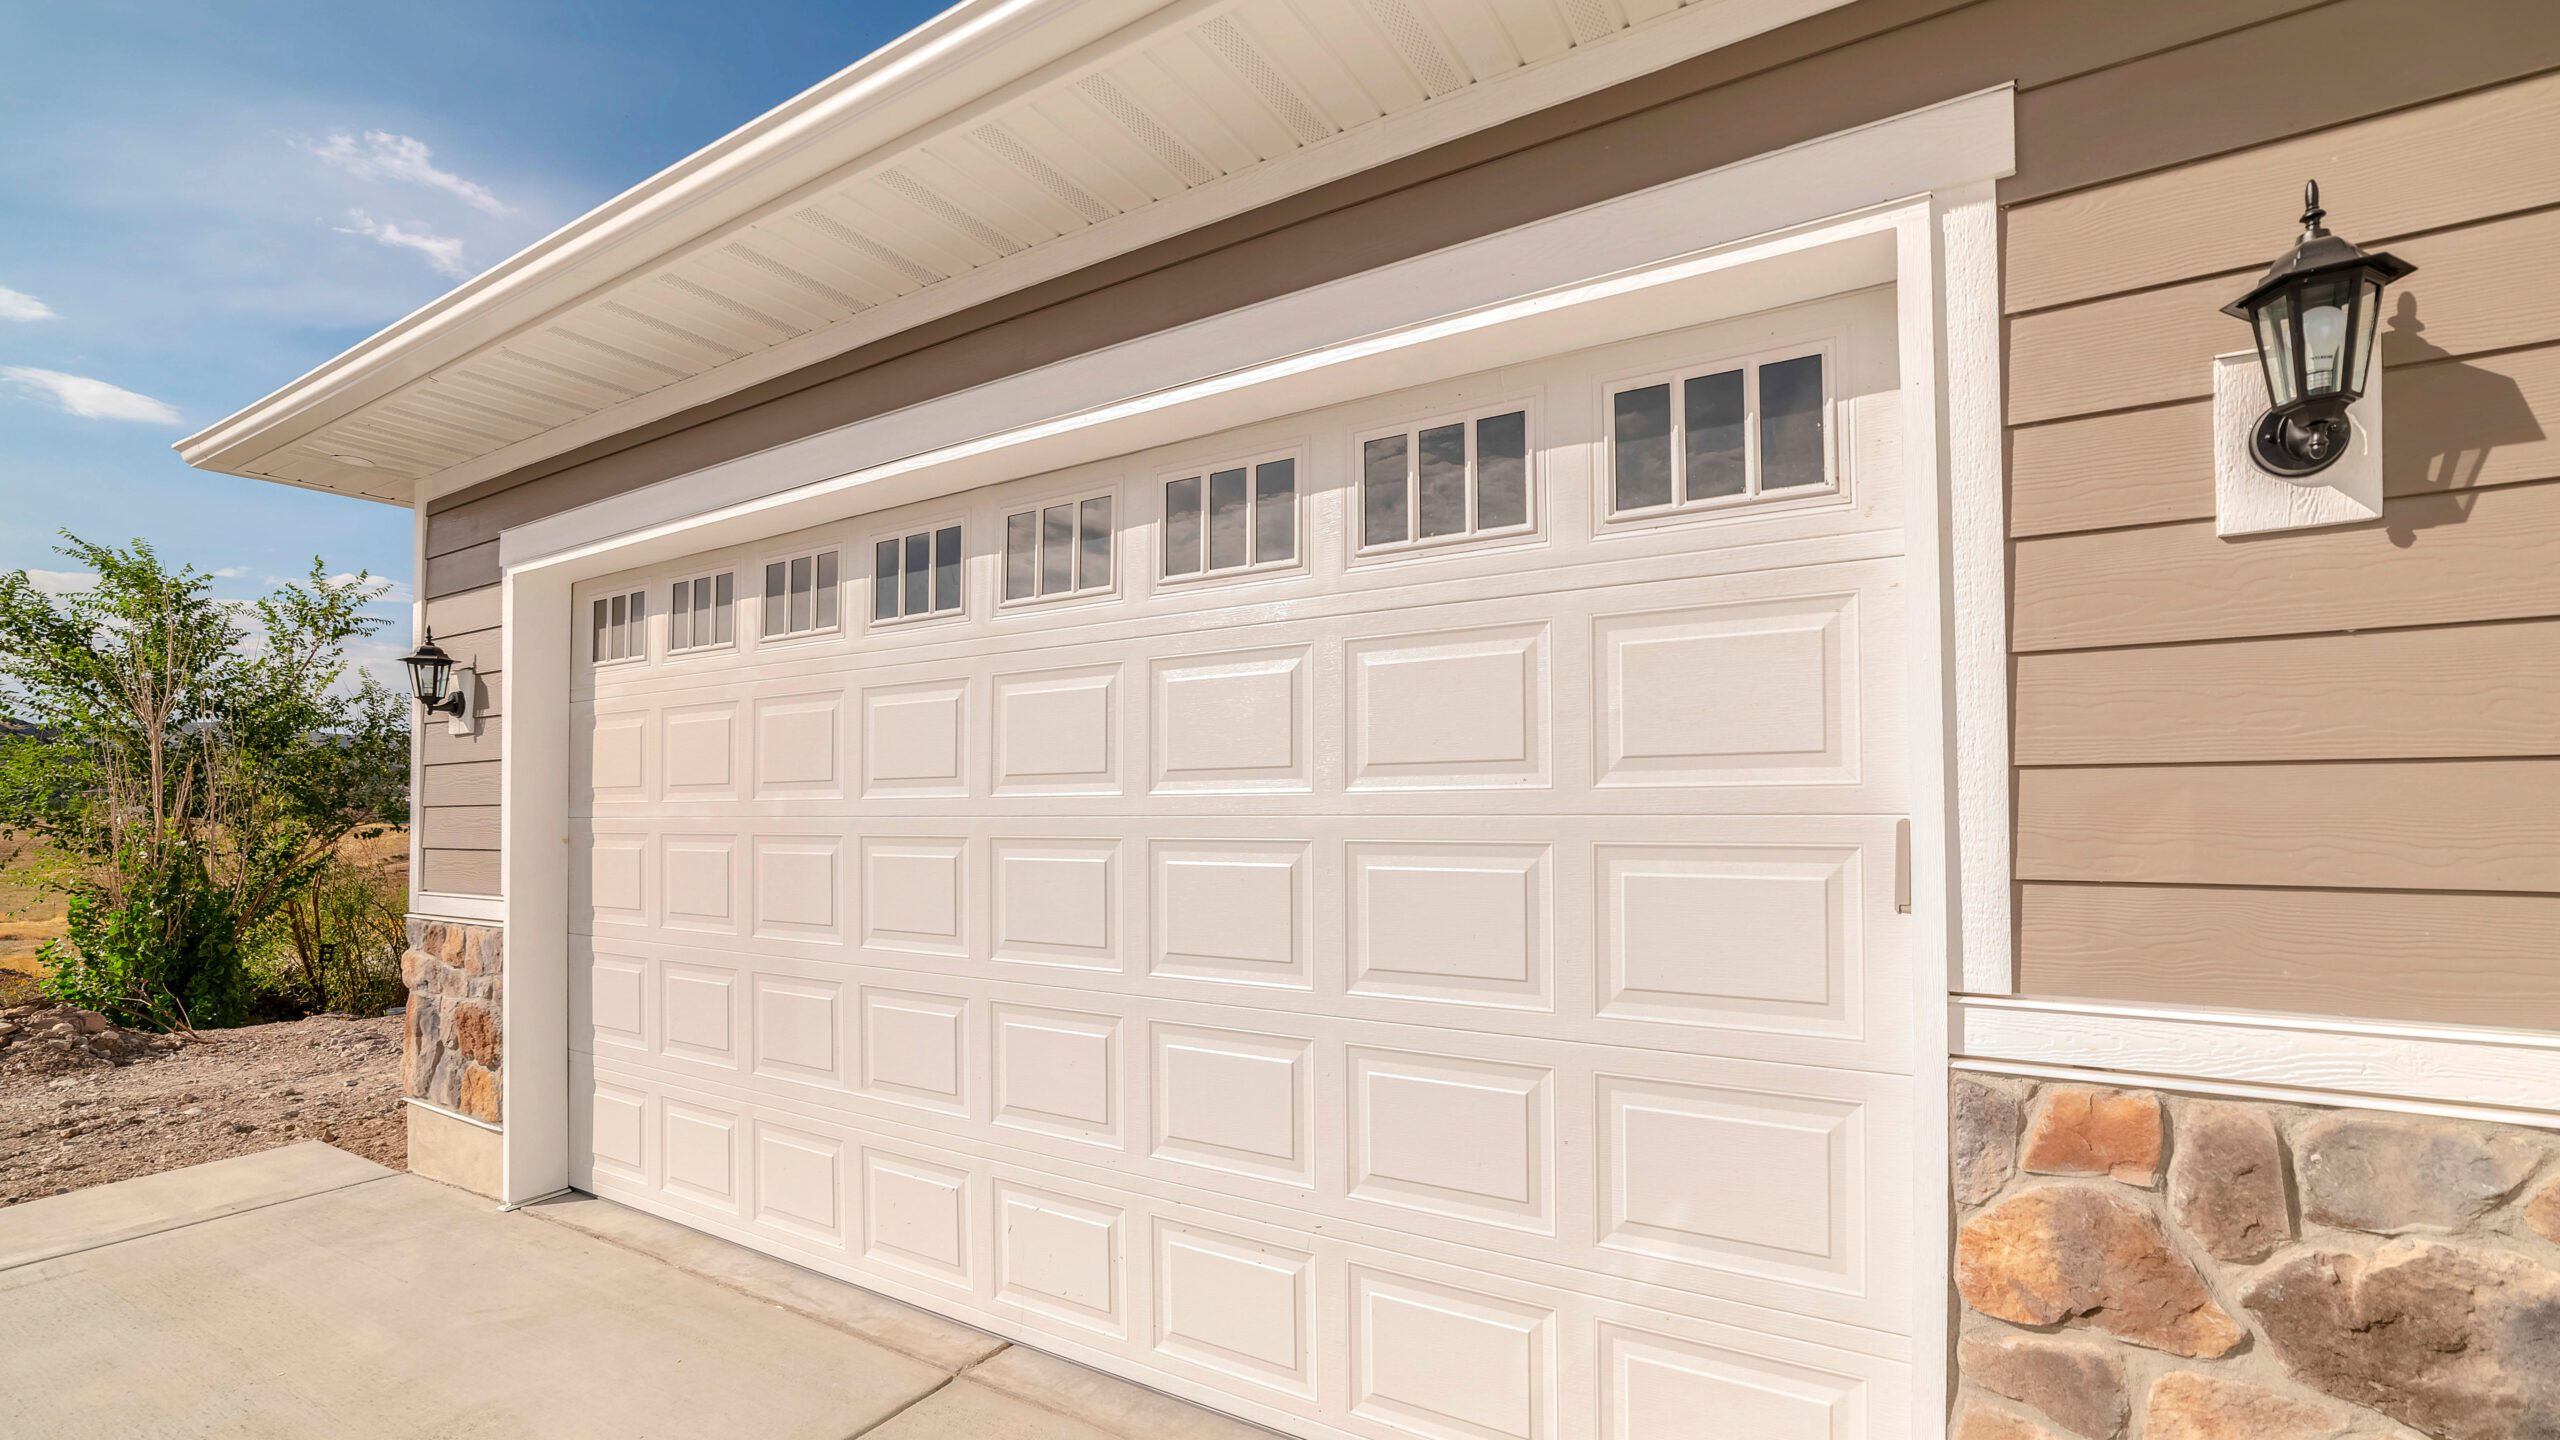 Affordable Garage Door Fix is proud to provide expert garage door repair in Bountiful, Utah. Contact us at (385) 213-1977 for a quote.